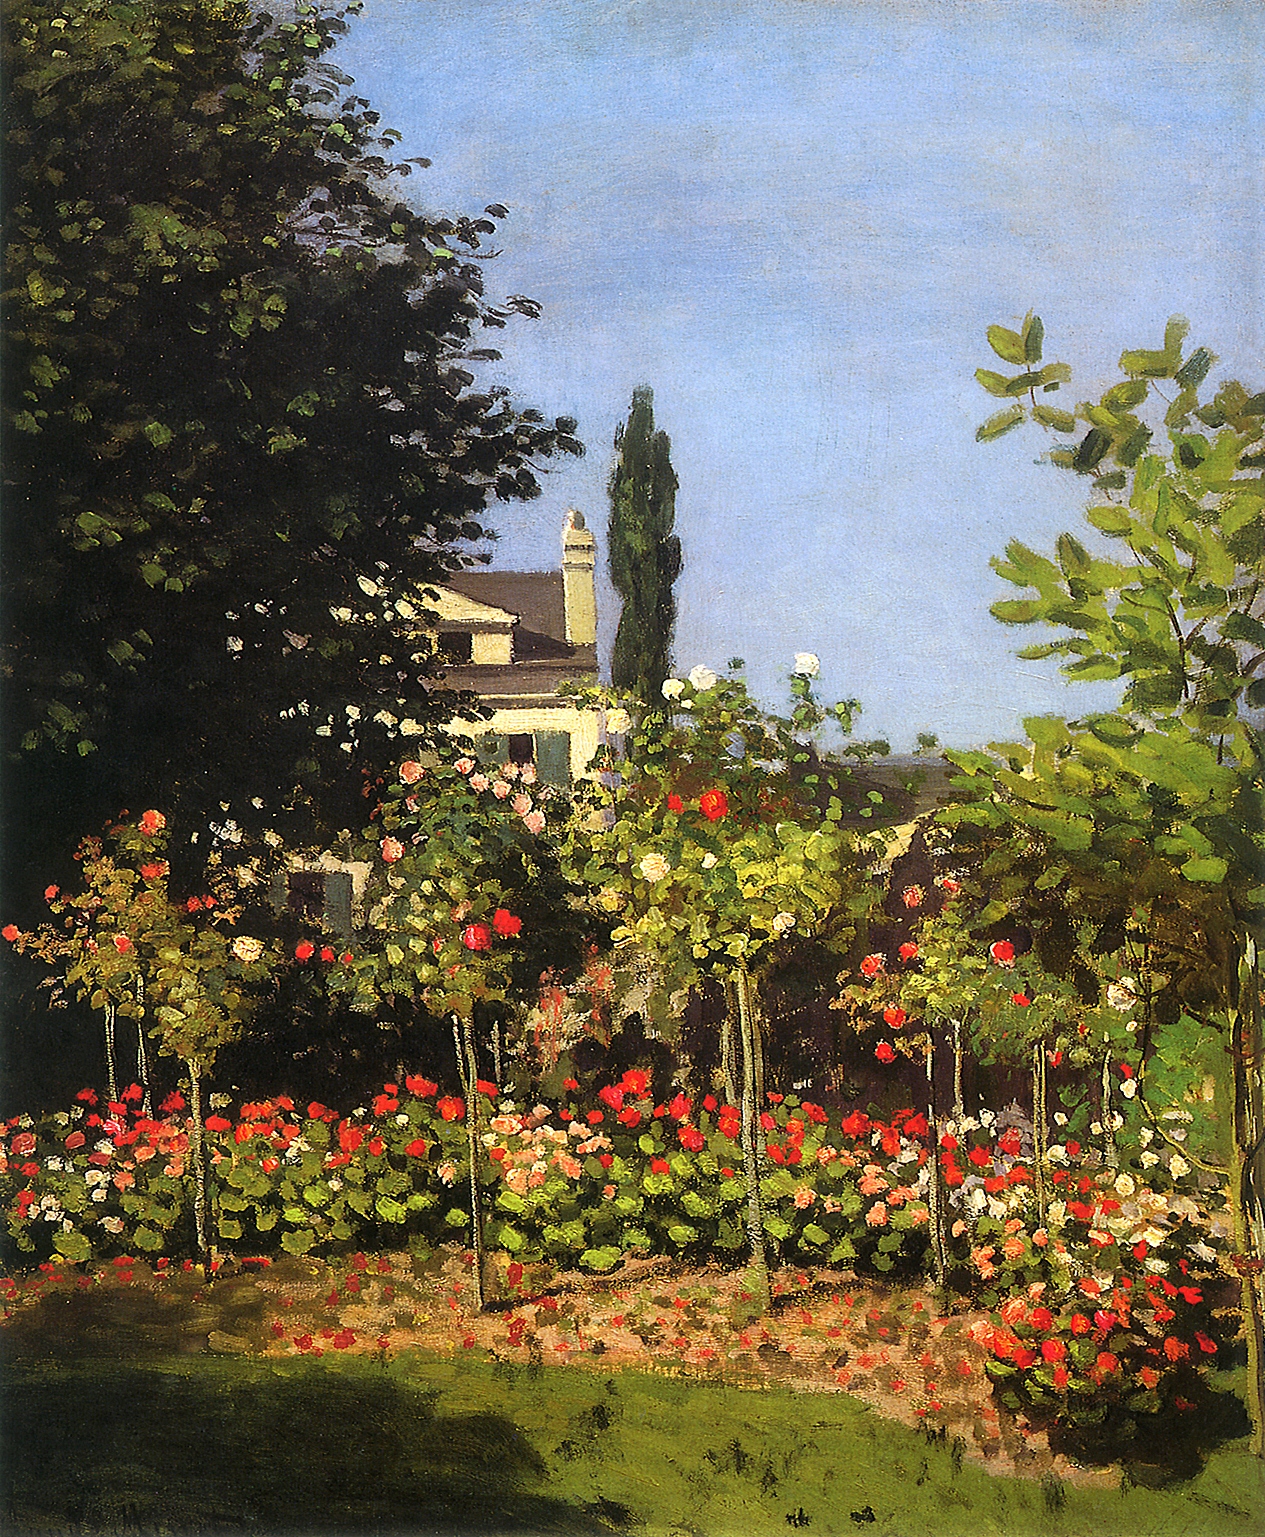 Garden in Bloom at Sainte-Addresse 1866